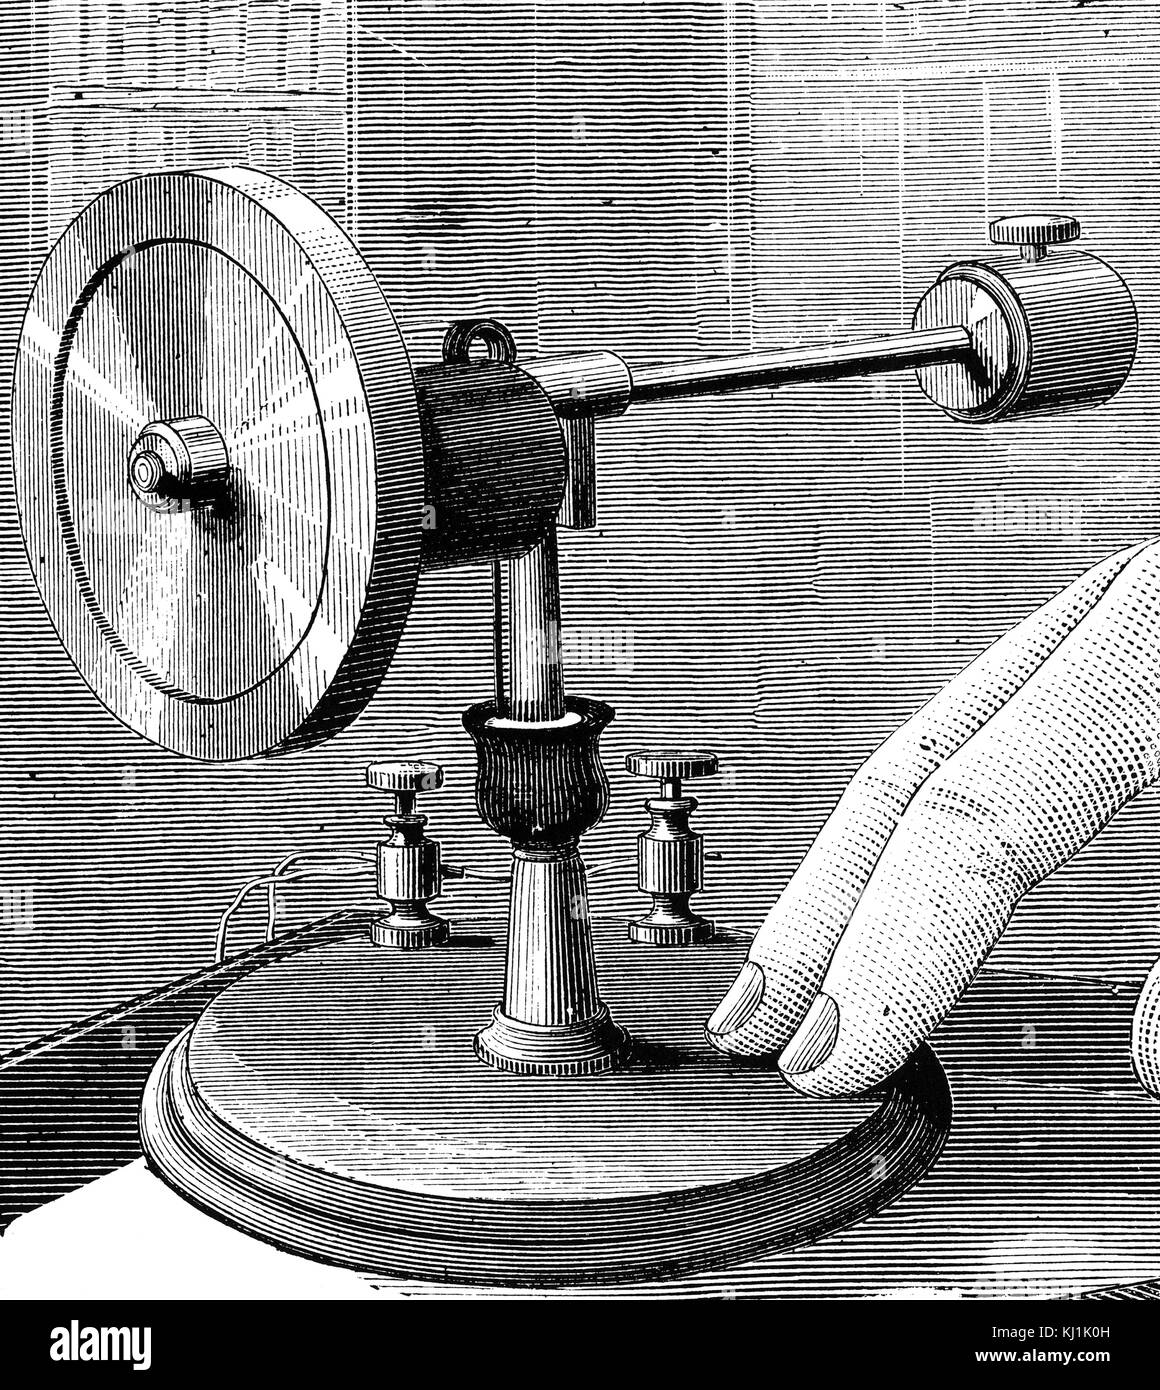 Gravur mit einem elektrischen Kreisel, ein Gerät, bestehend aus einem Rad oder Scheibe montiert, so dass es schnell um eine Achse, die sich kostenlos in Richtung zu ändern drehen können. Vom 19. Jahrhundert Stockfoto